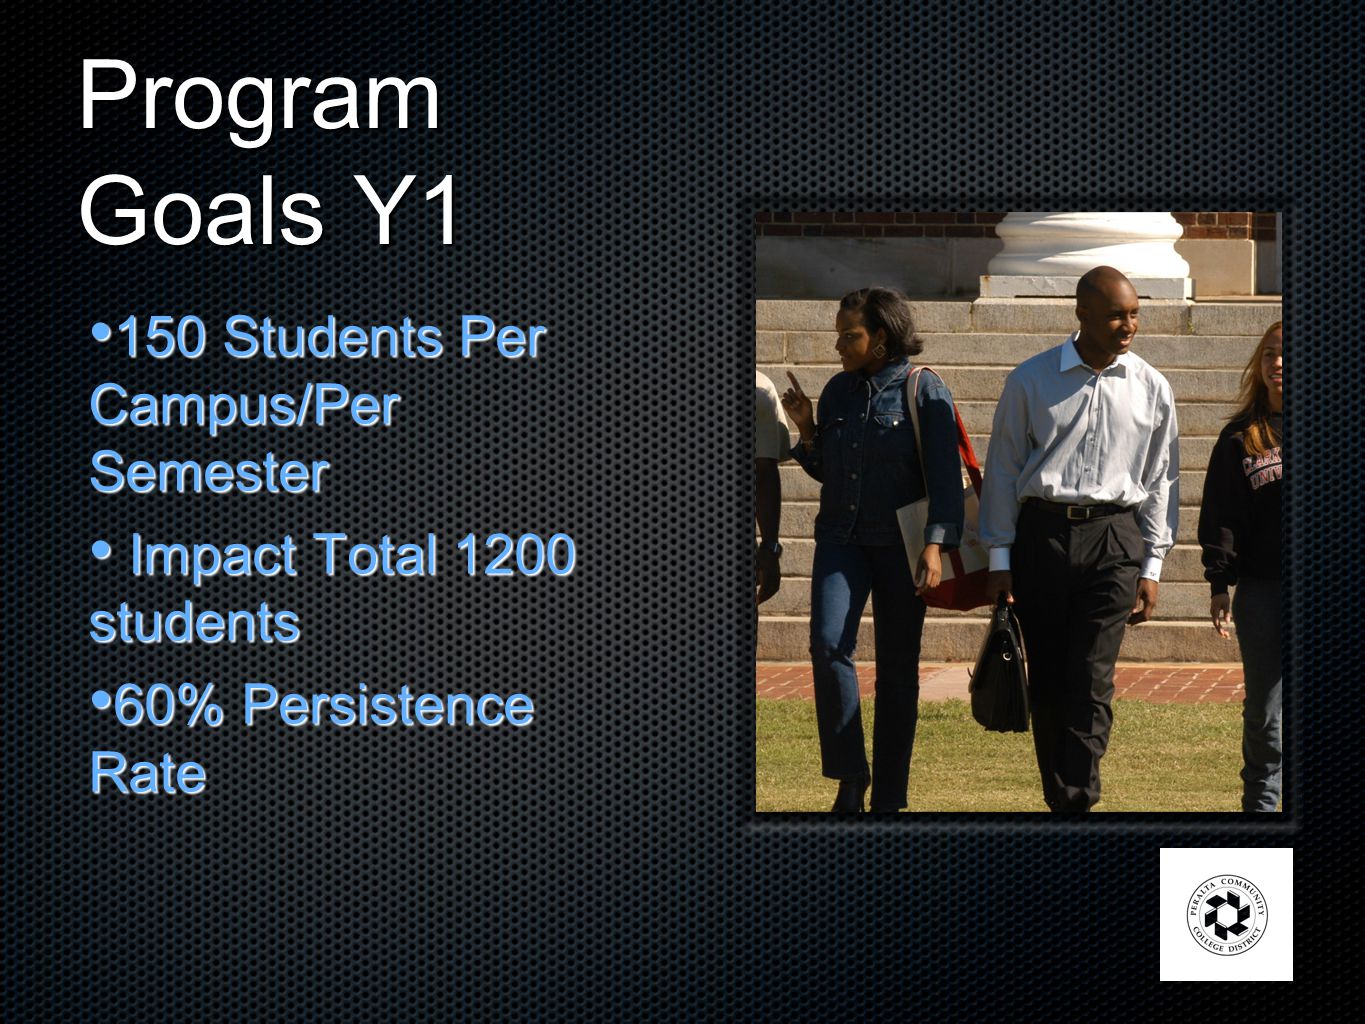 Program Goals Y1 150 Students Per Campus/Per Semester 150 Students Per Campus/Per Semester Impact Total 1200 students Impact Total 1200 students 60% Persistence Rate 60% Persistence Rate